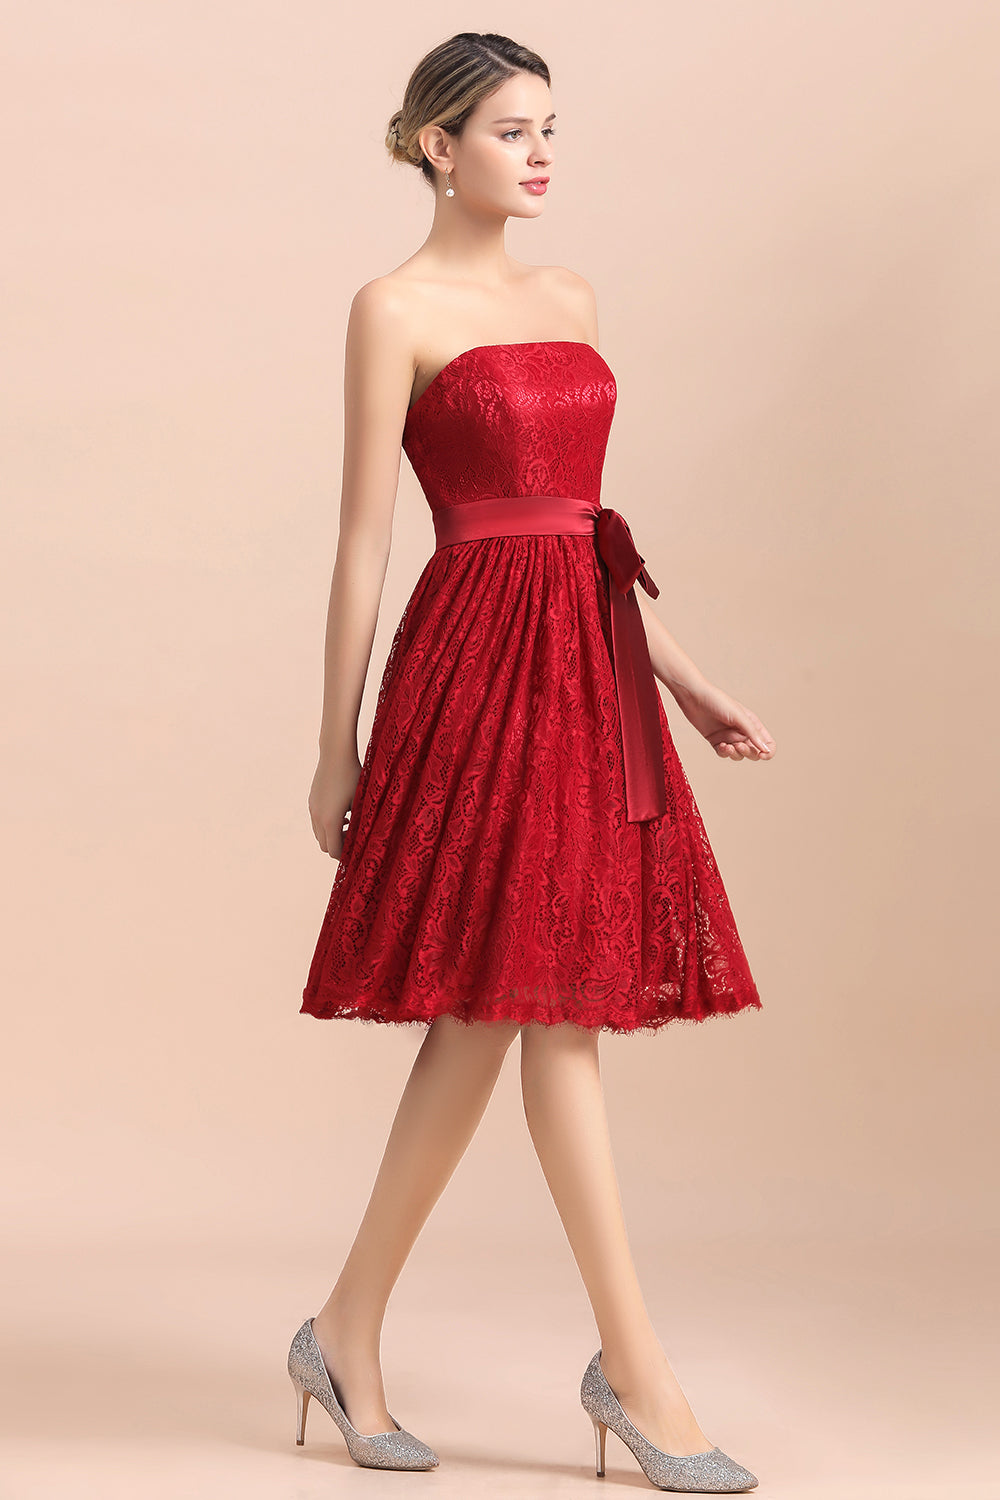 Finden Sie bei babyonlinedress.de Rote Brautjungfernkleider Kurz online. Günstiges Brautjungfernkleid aus chiffon maß geschneidert bestellen.